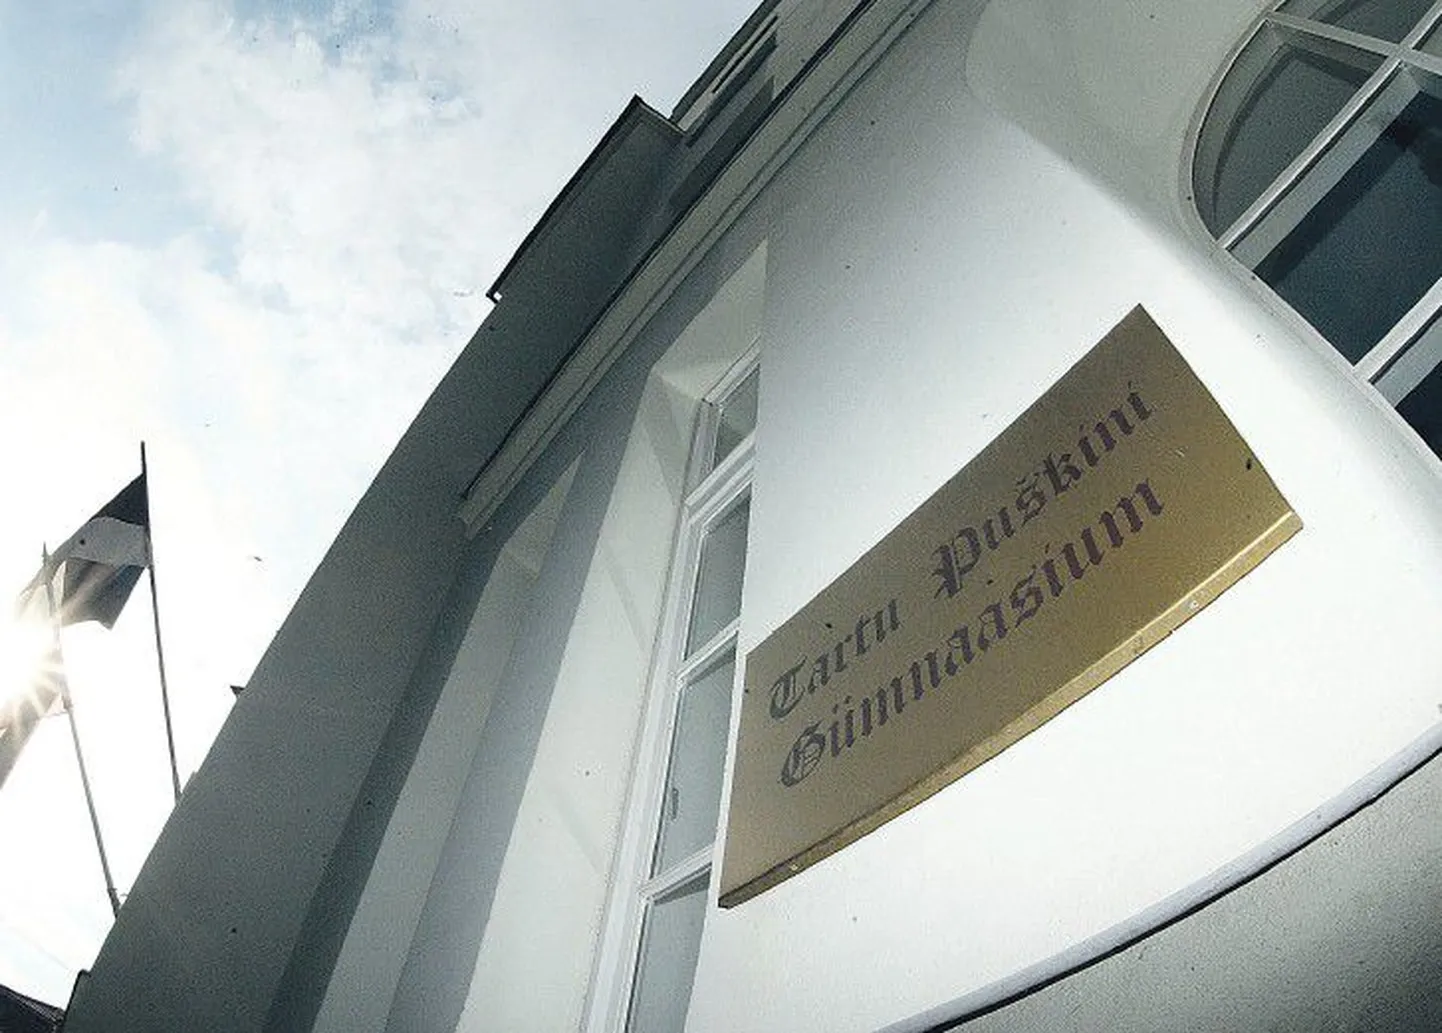 Городские власти Тарту обосновали необходимость объединения русскоязычных гимназий и, следовательно, закрытия Пушкинской гимназии тем, что число учащихся в них постоянно уменьшается. В 2007 году это событие вызвало в городе сильный переполох.